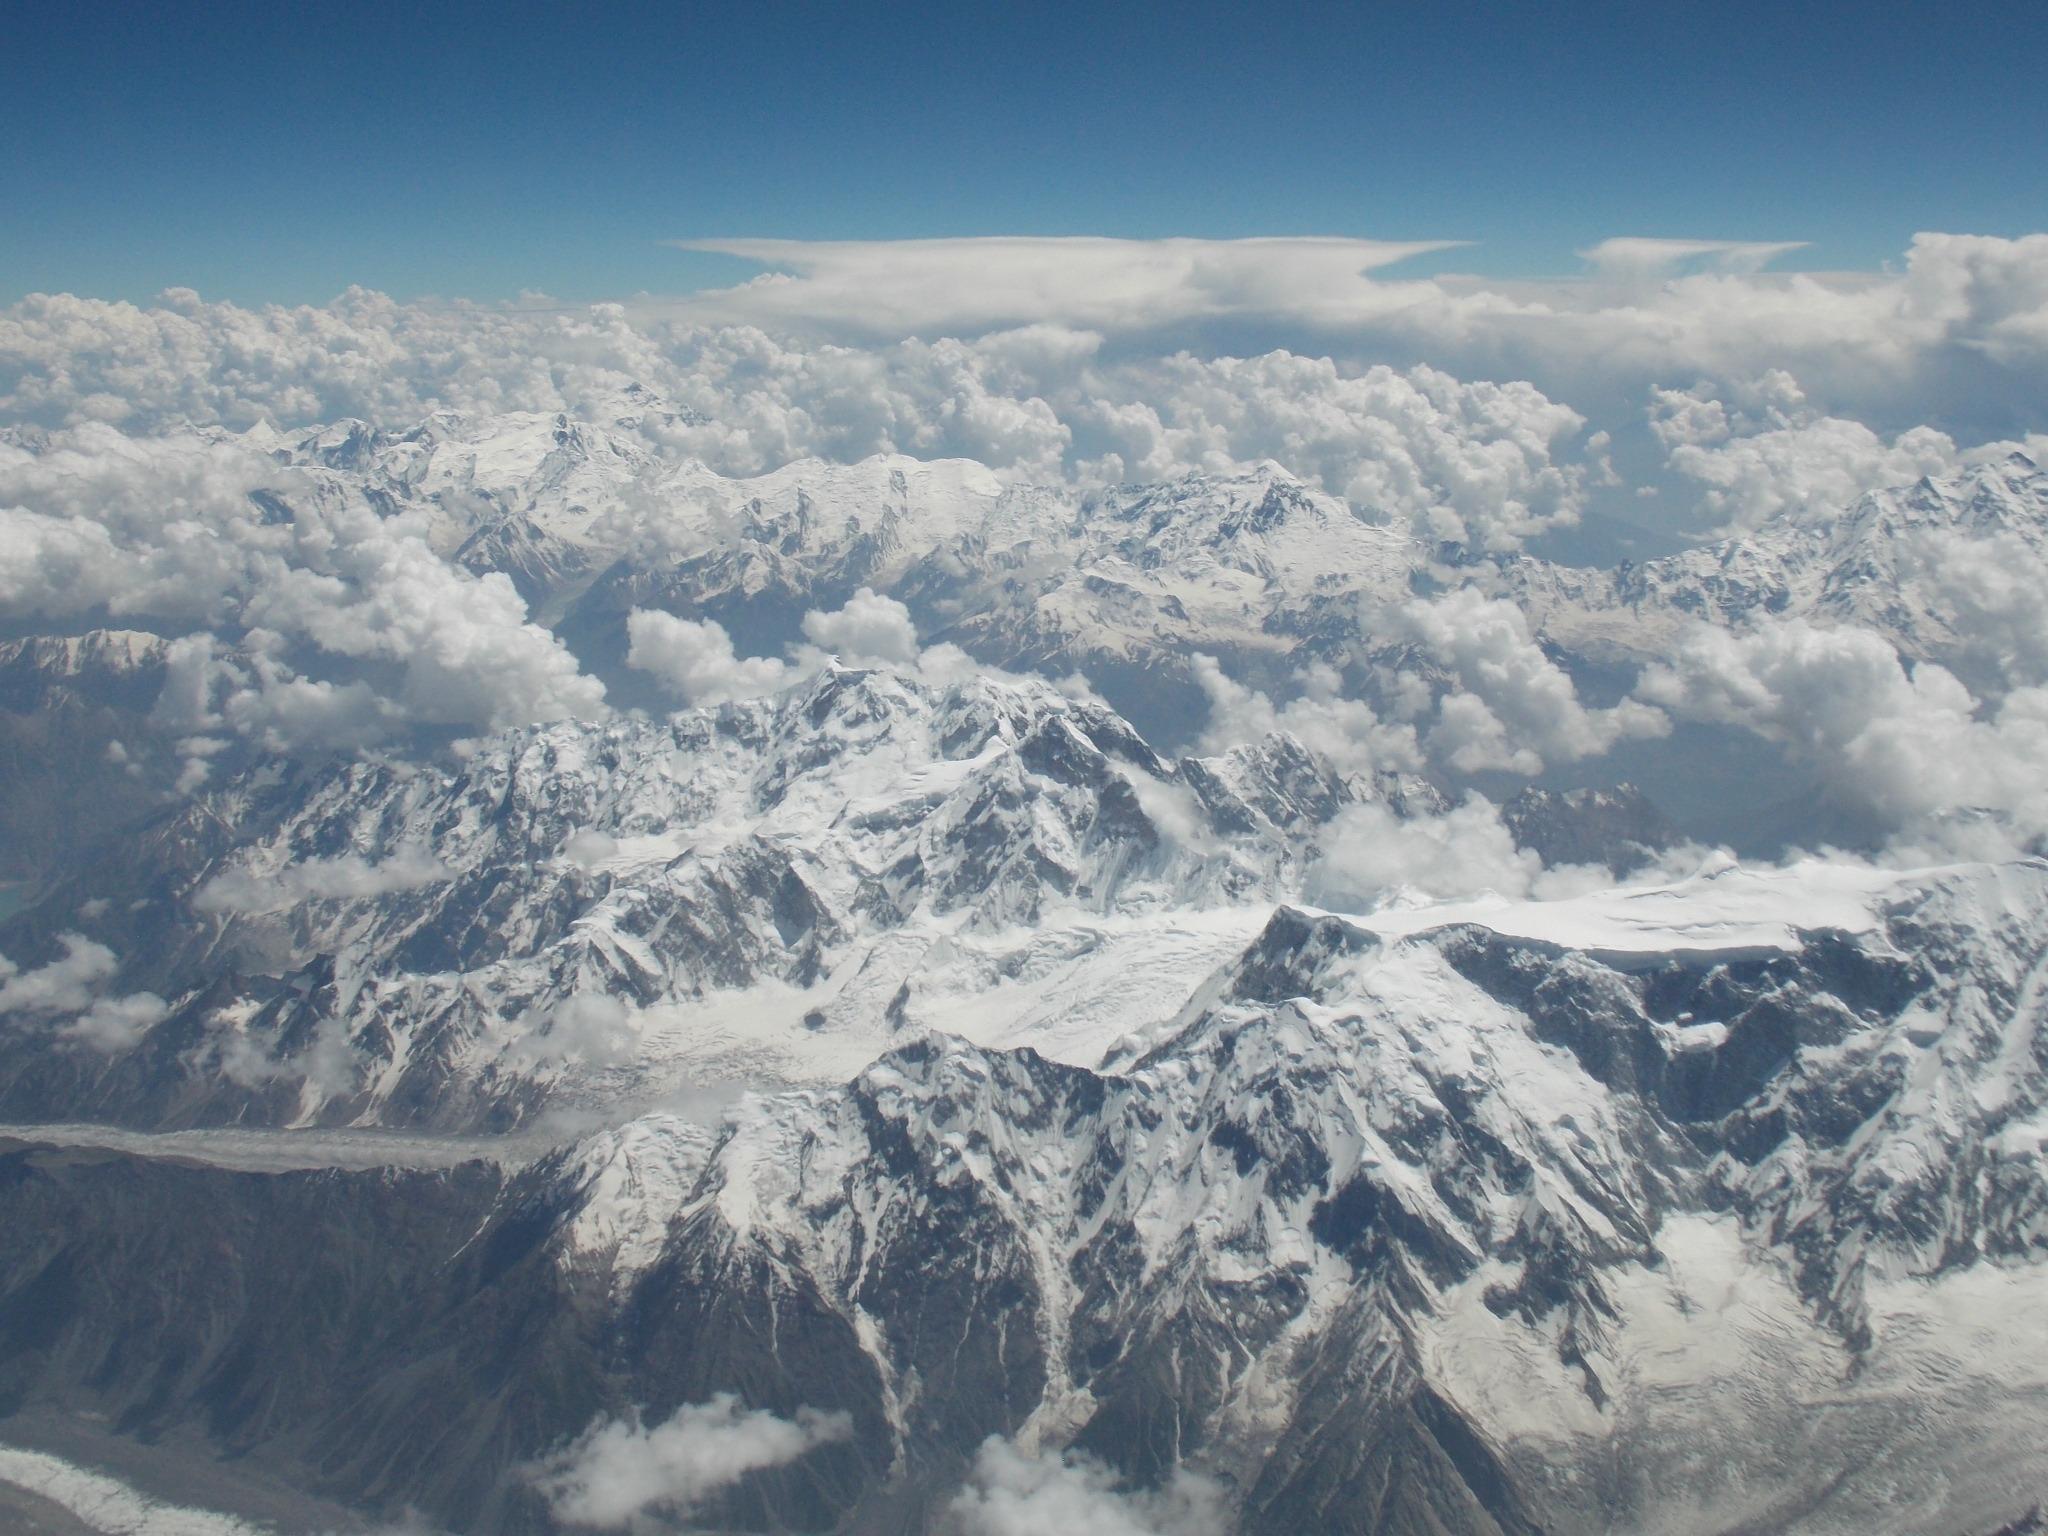 アルパインツアー 世界の山旅に出かけよう ドーハからの日本へ帰るフライトは アフガン上空を飛行 ヒンドゥークシュ山脈 カラコルム山脈の北側を抜ける最高のマウンテンフライトです Http T Co Yuhsykmt1c Twitter